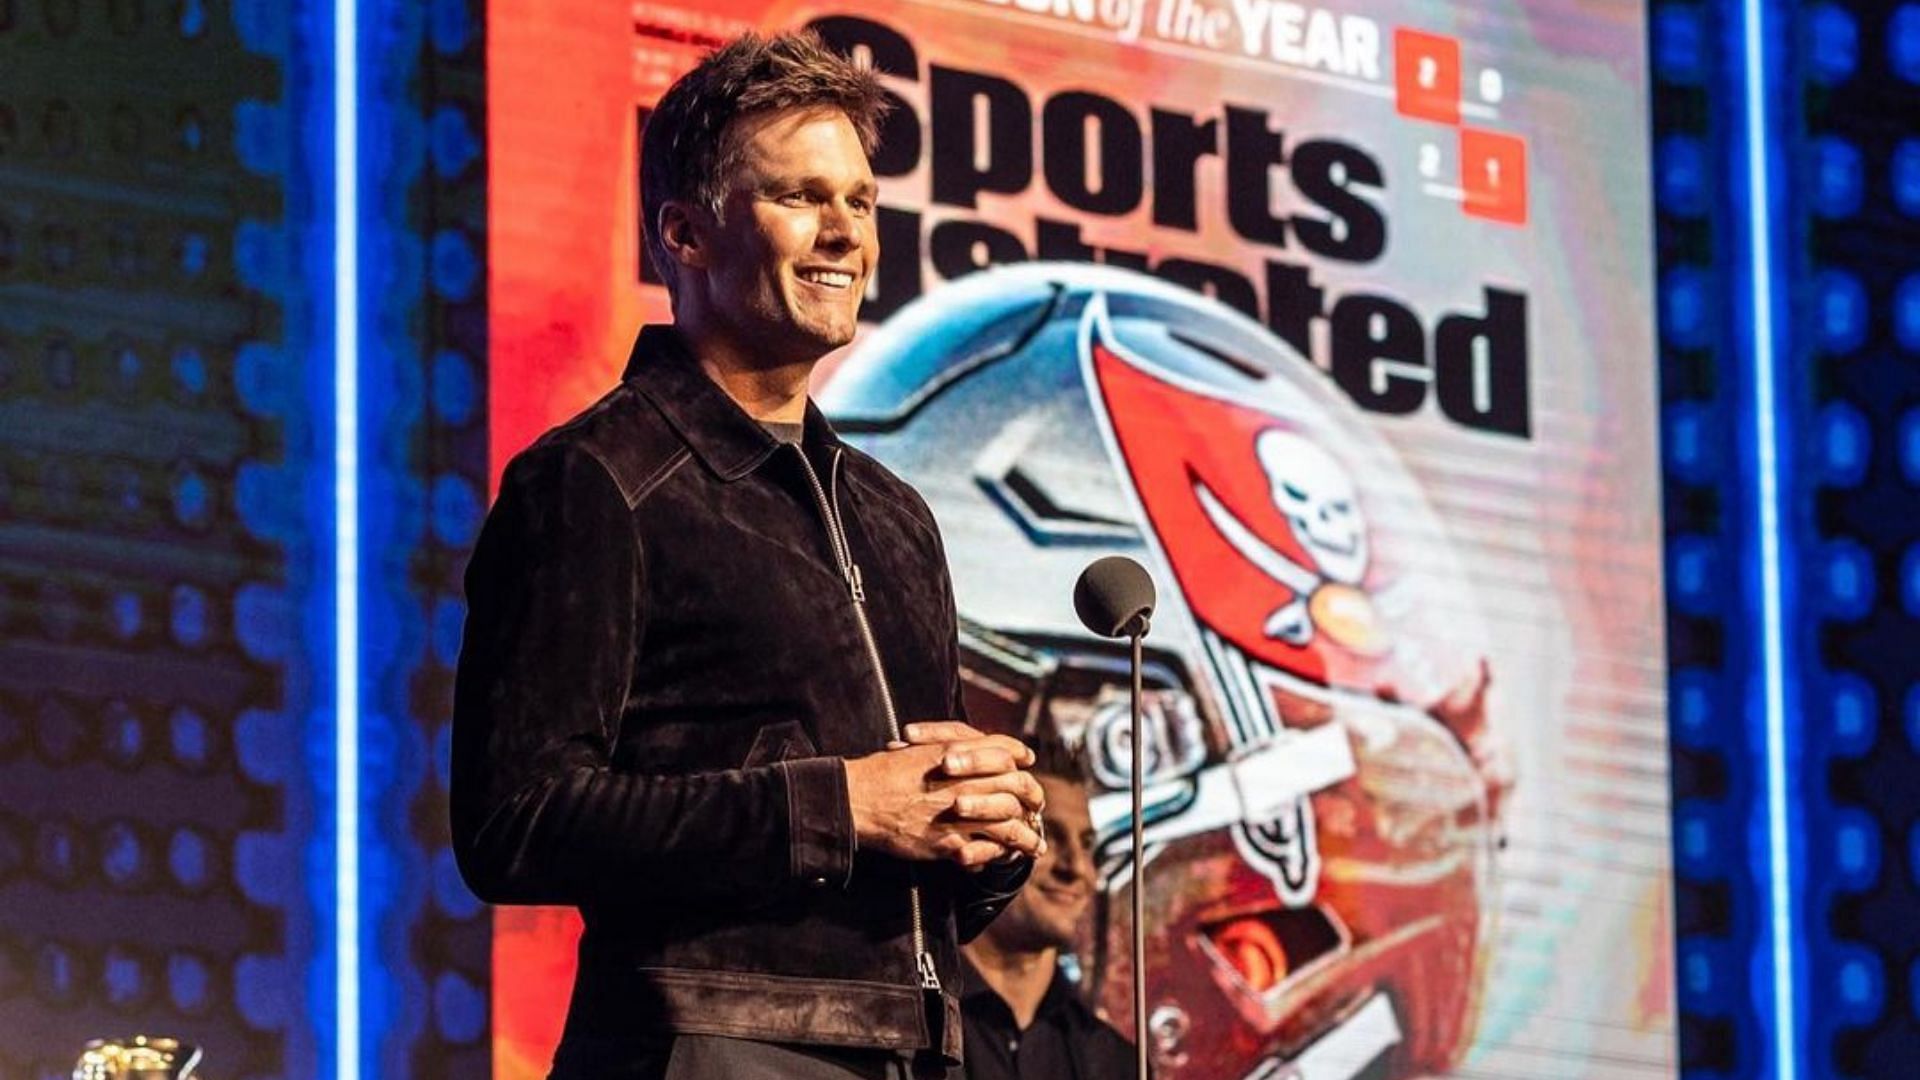 NFL legend Tom Brady (Image via Instagram/@tombrady)